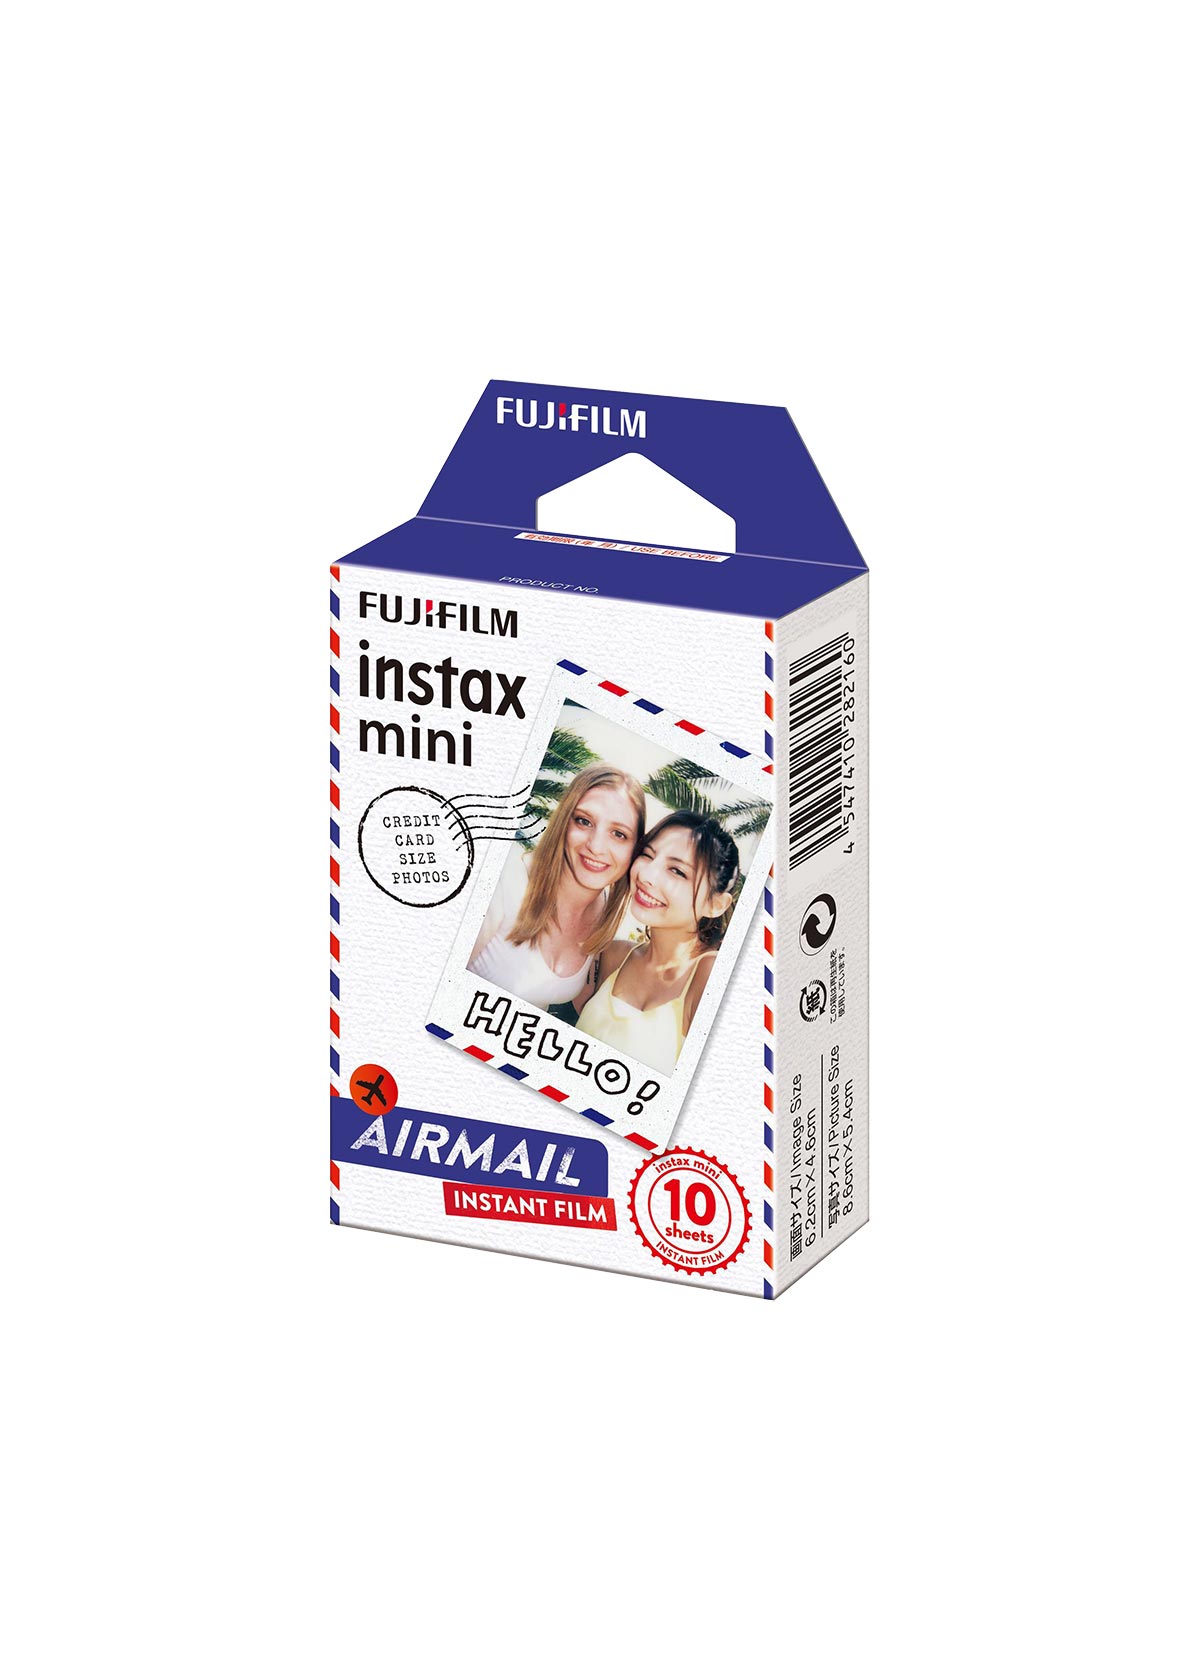 Fujifilm Instax Mini Film Airmail 10-pack